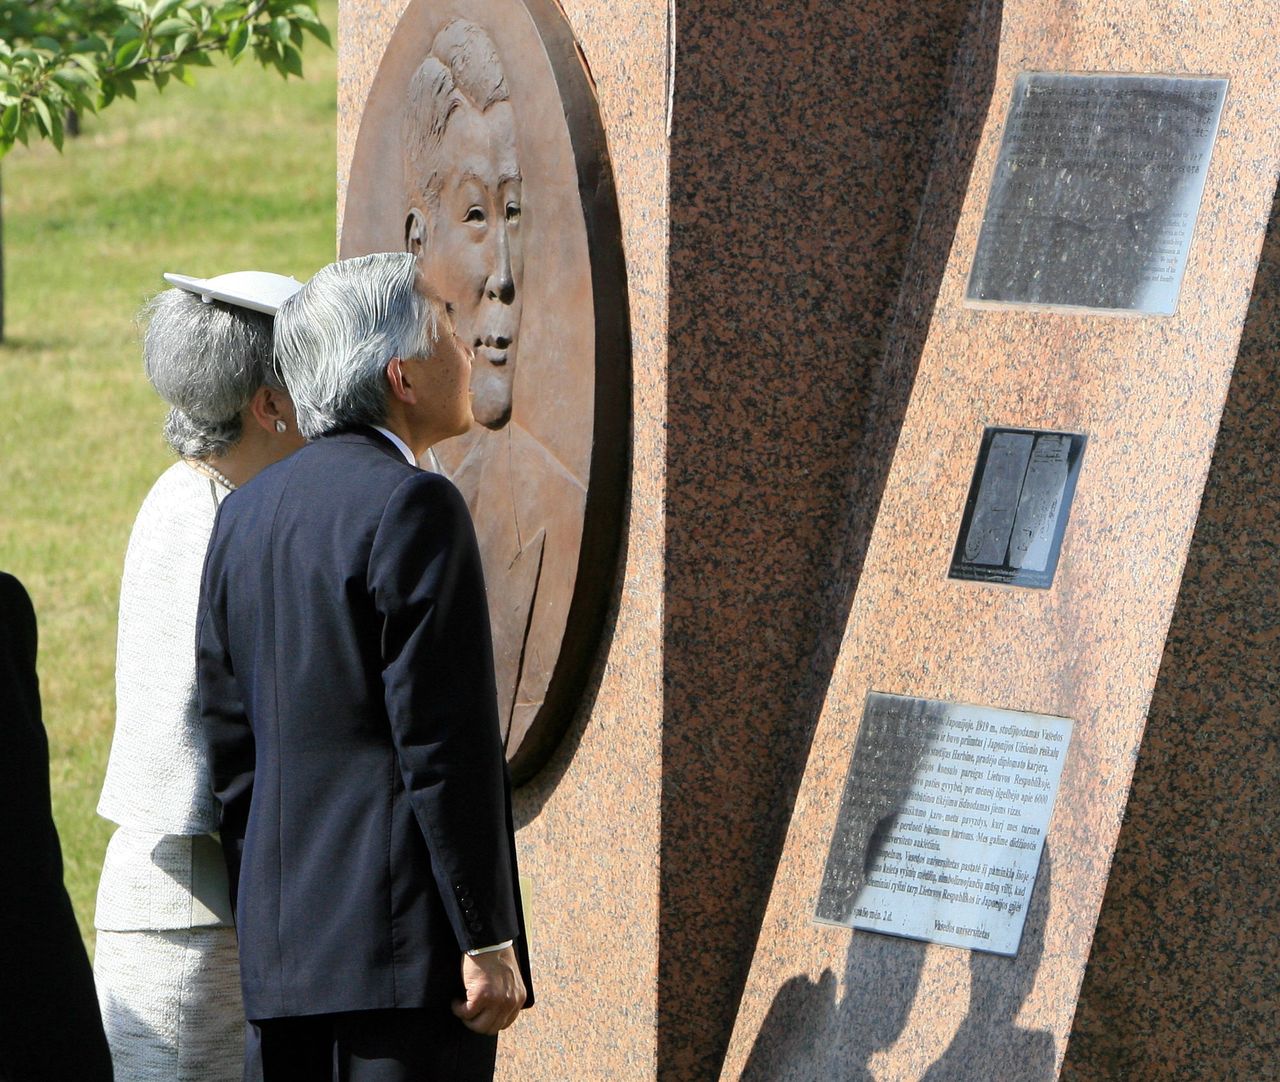 Los Emperadores (actuales Emperadores Eméritos) contemplan el monumento a Sugihara Chiune en Lituania el 26 de mayo de 2007, durante su visita al país báltico. (Fotografía: Jiji Press) 